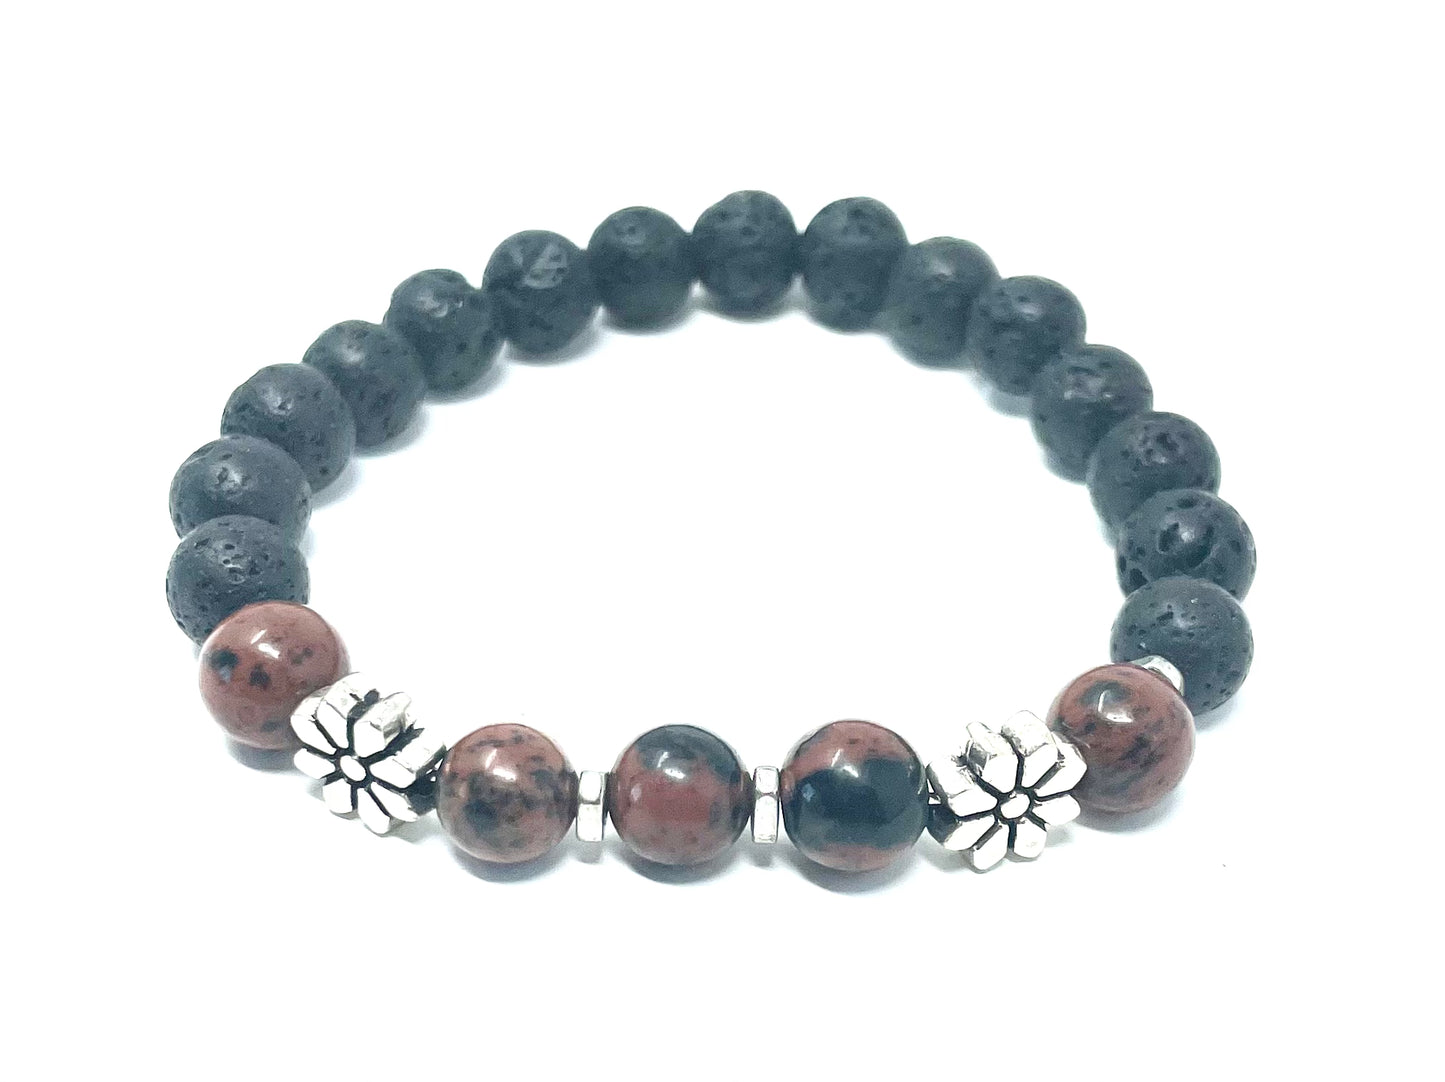 Mahogany Obsidian Lava Beads Diffusing Bracelet